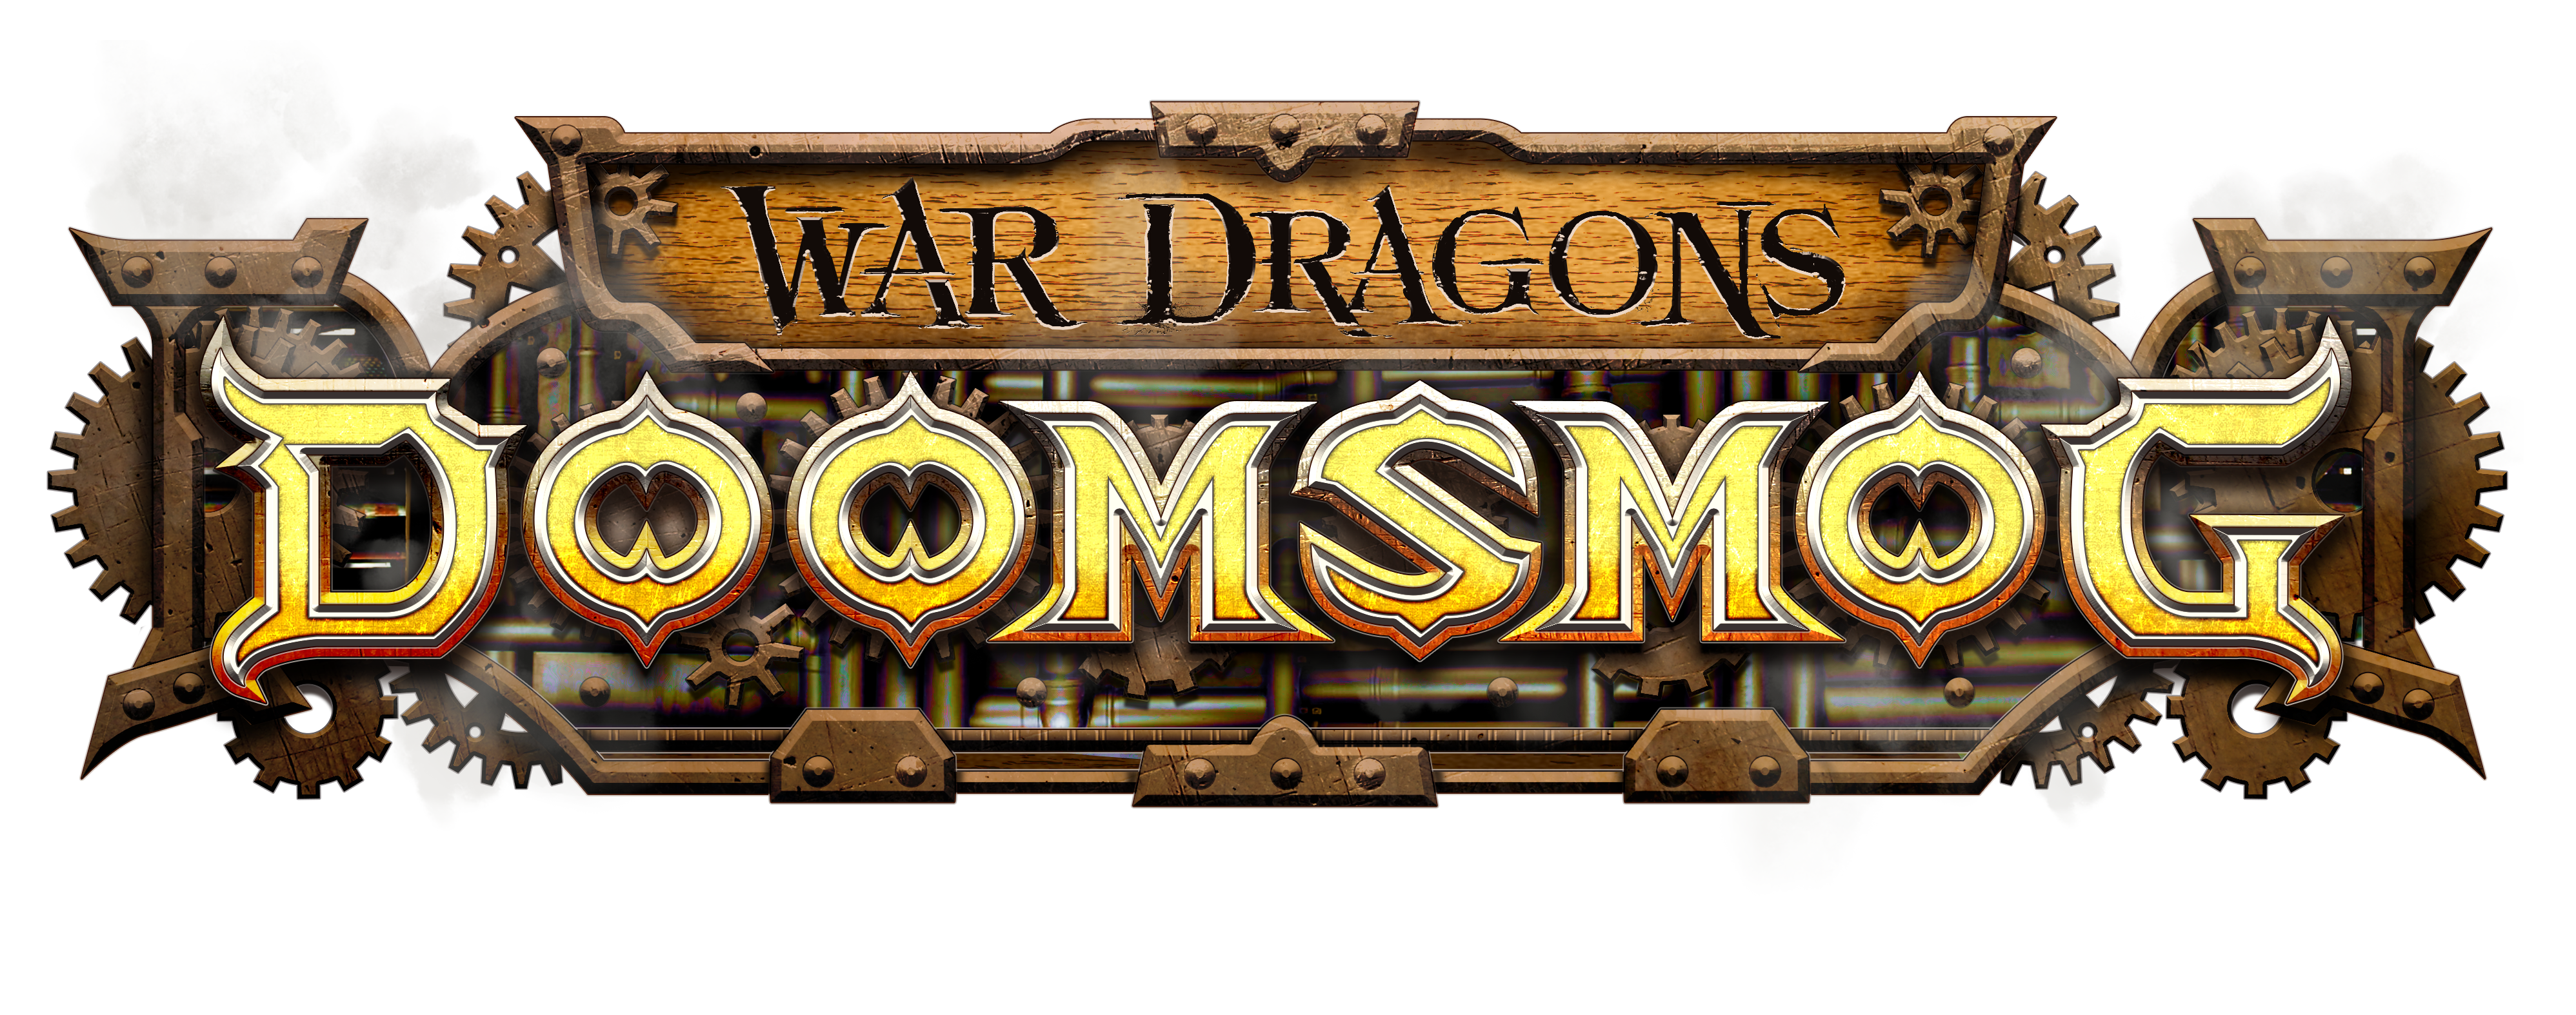 Doomsmog_logo